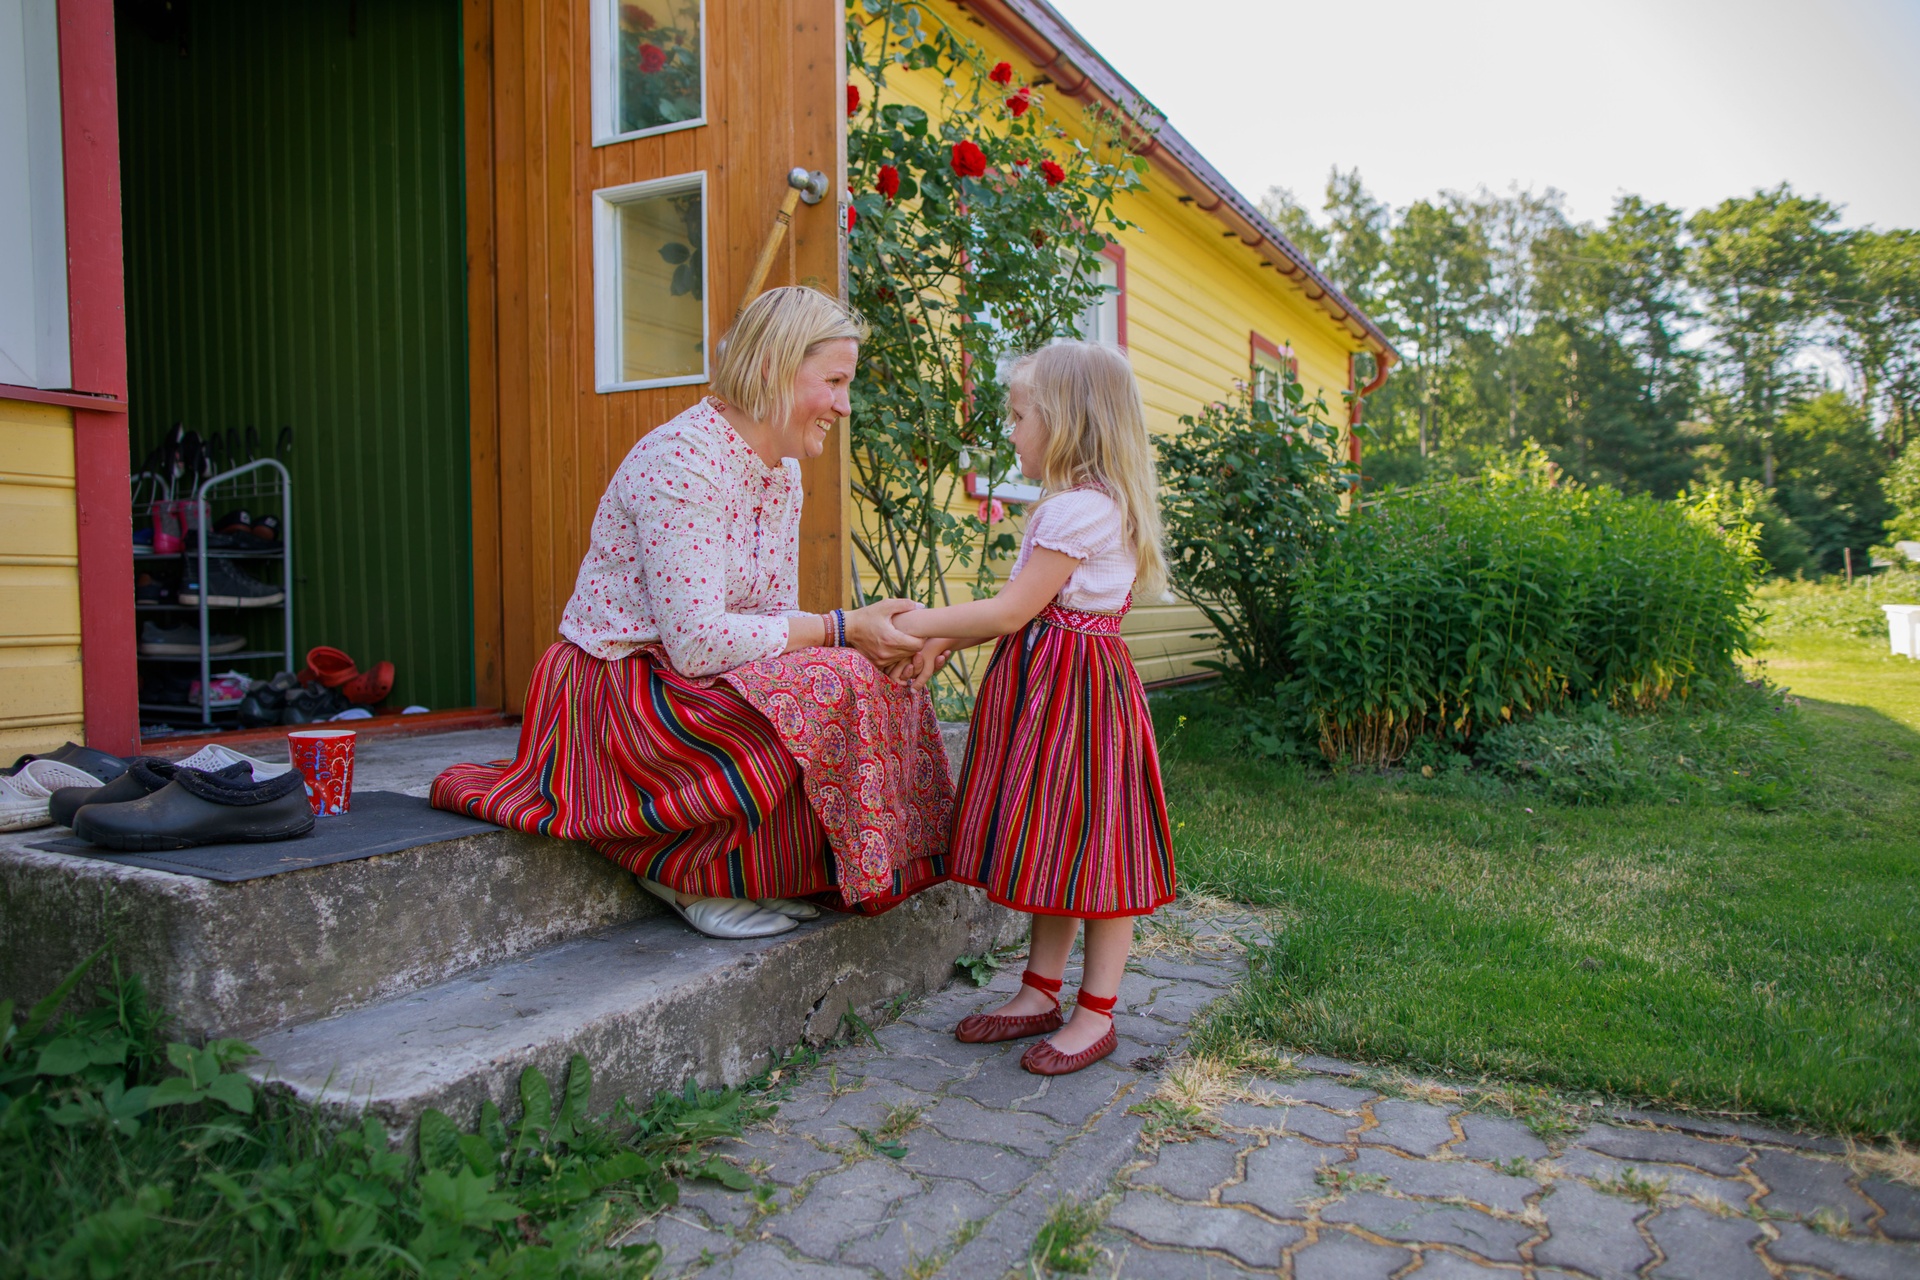 Estlands Kultur wird an die nächste Generation weitergegeben